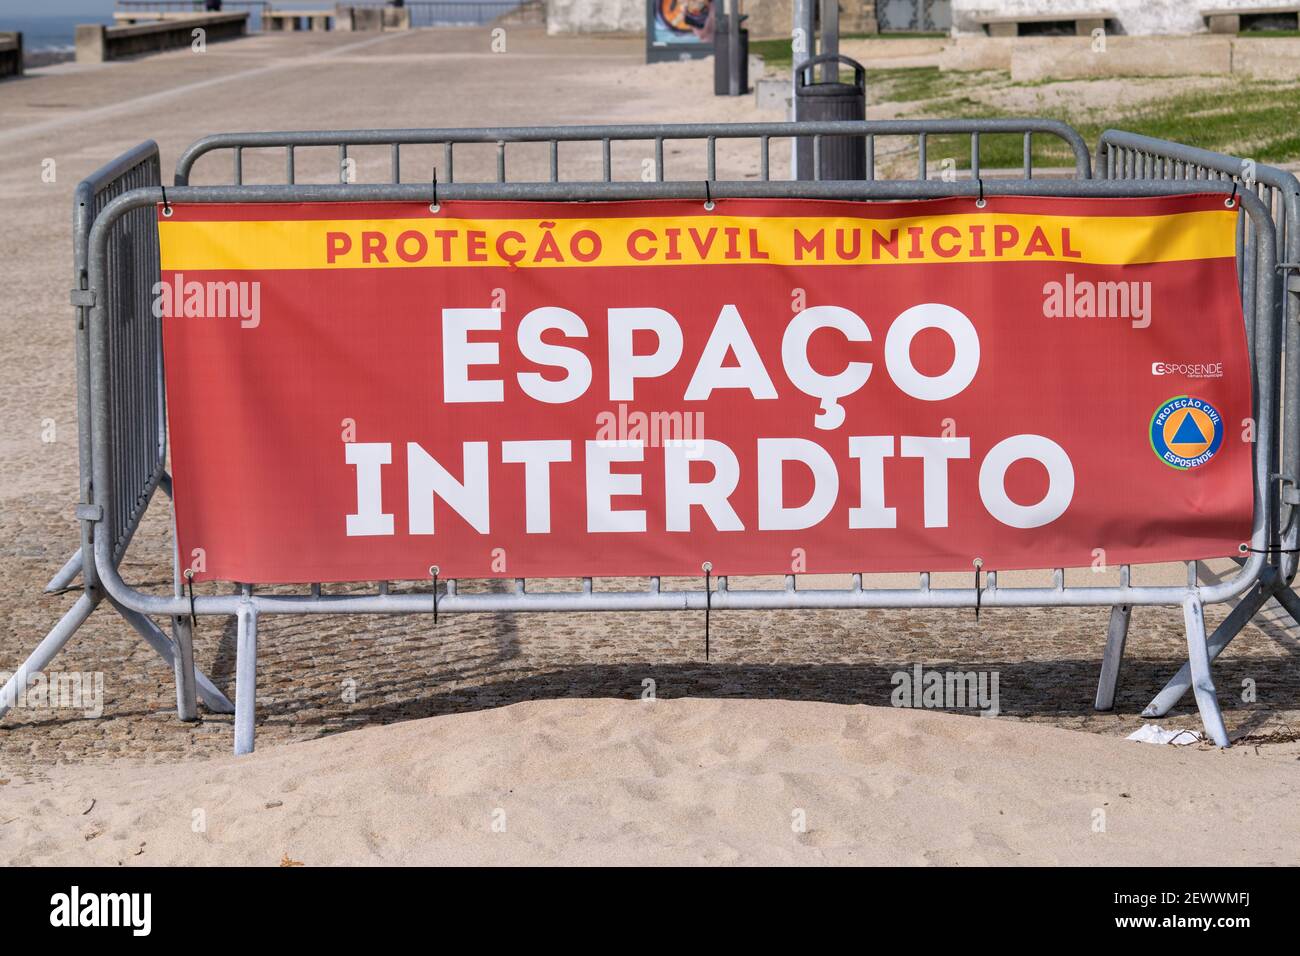 Protecção civil espaço interdito sign from Esposende Covid19 measures about social distancing in Portugal. Espaço Interdito sign Stock Photo